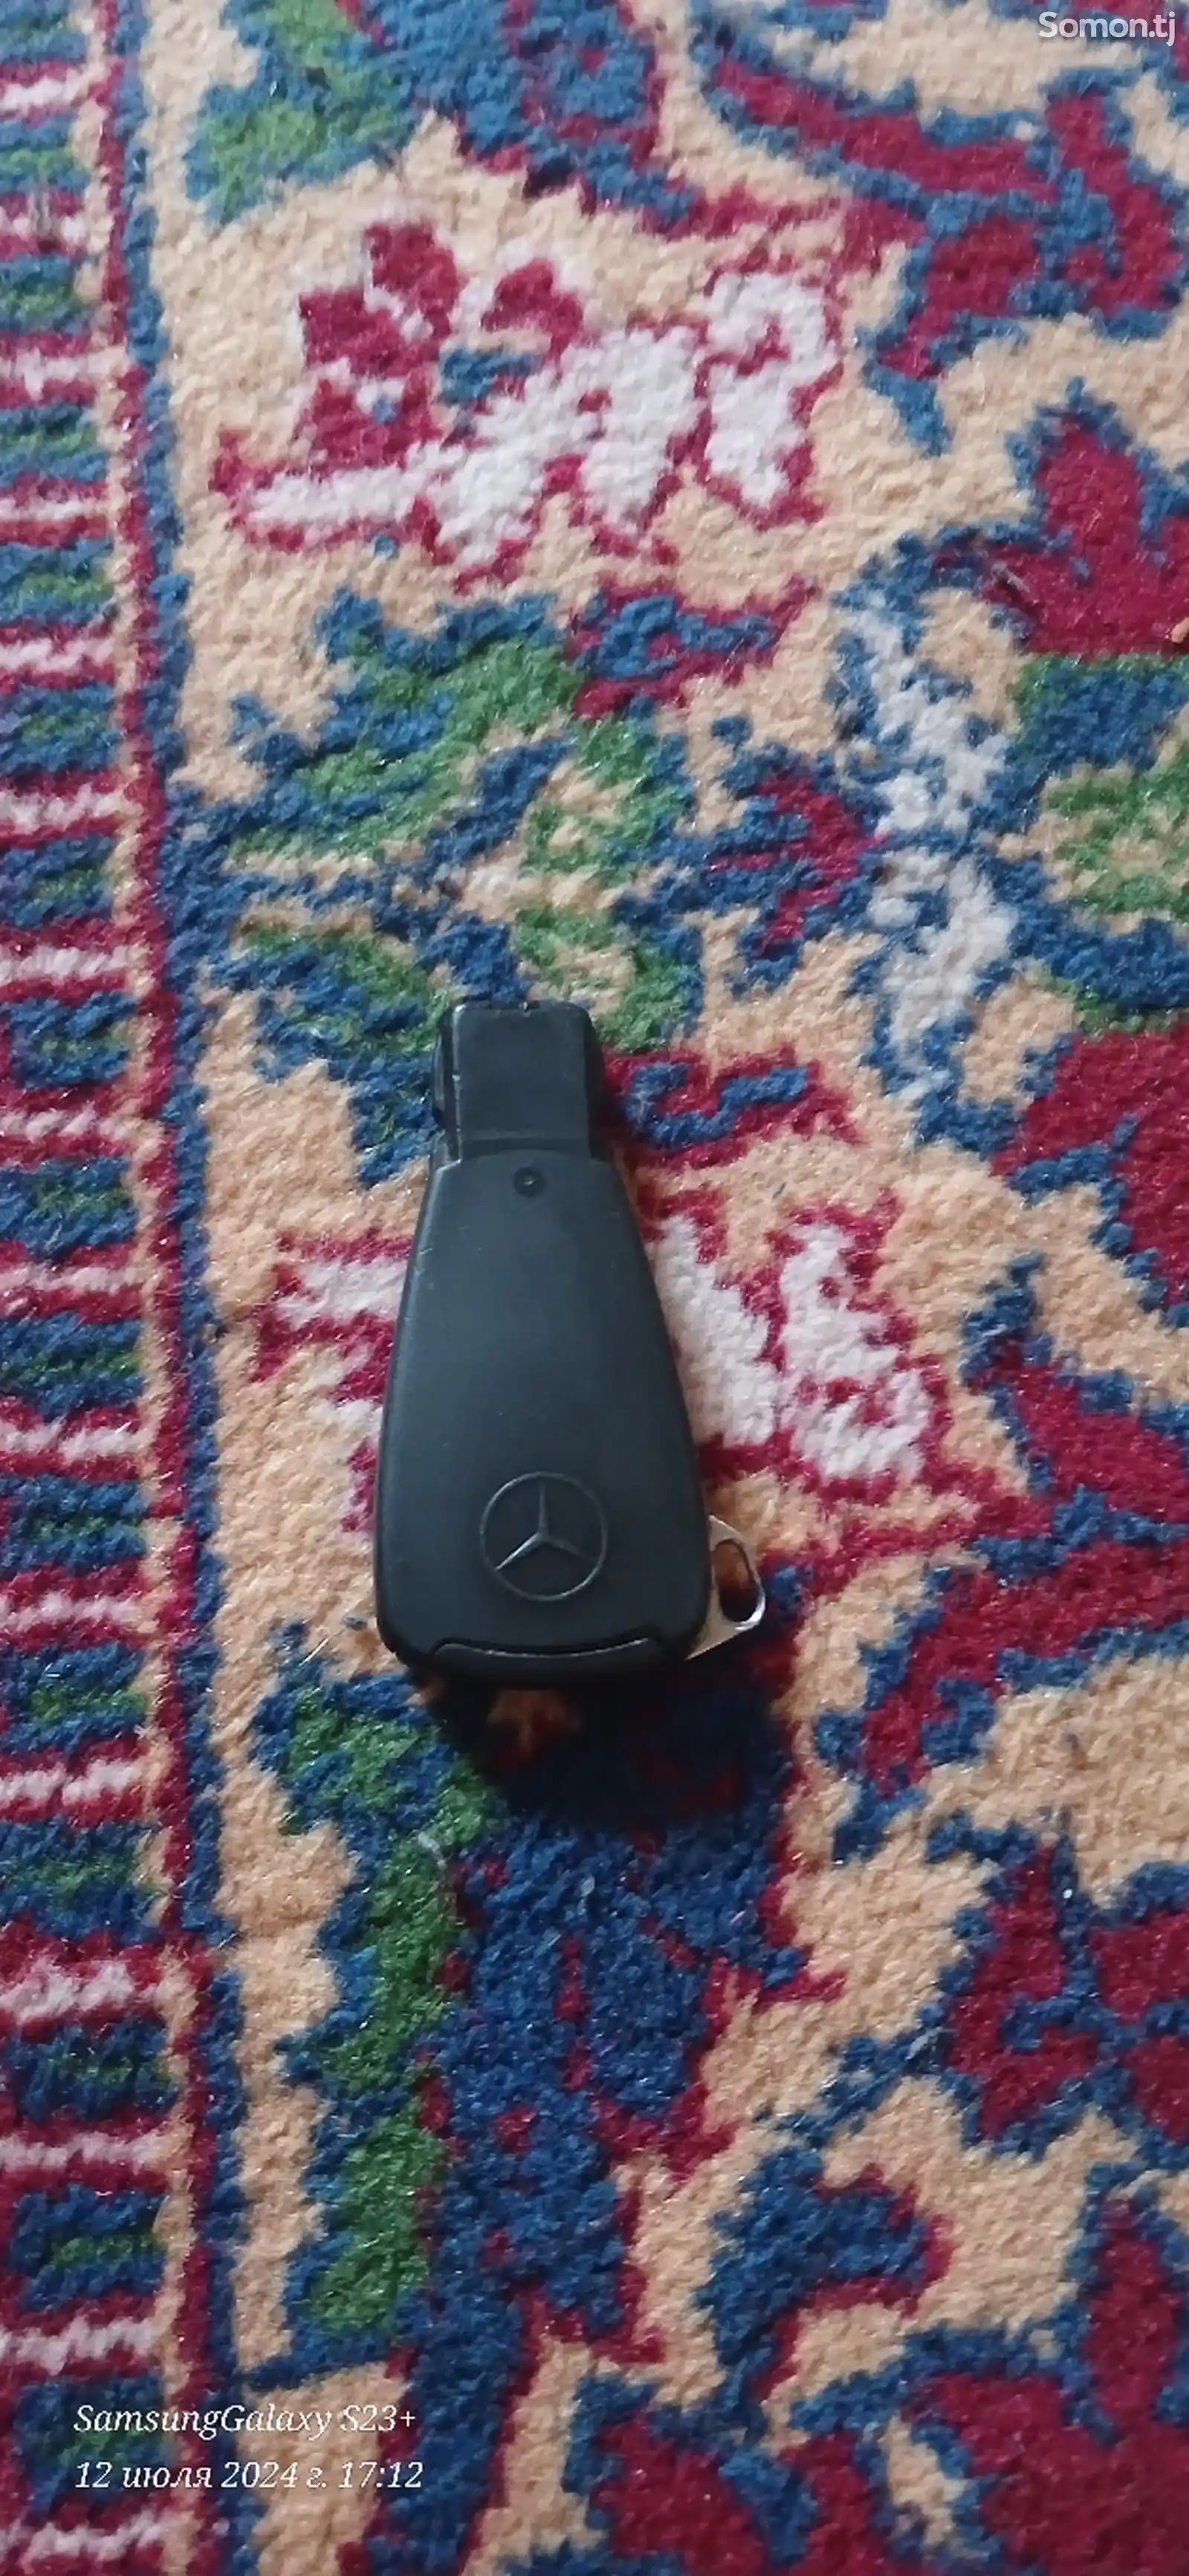 Ключ от Mercedes-Benz-2